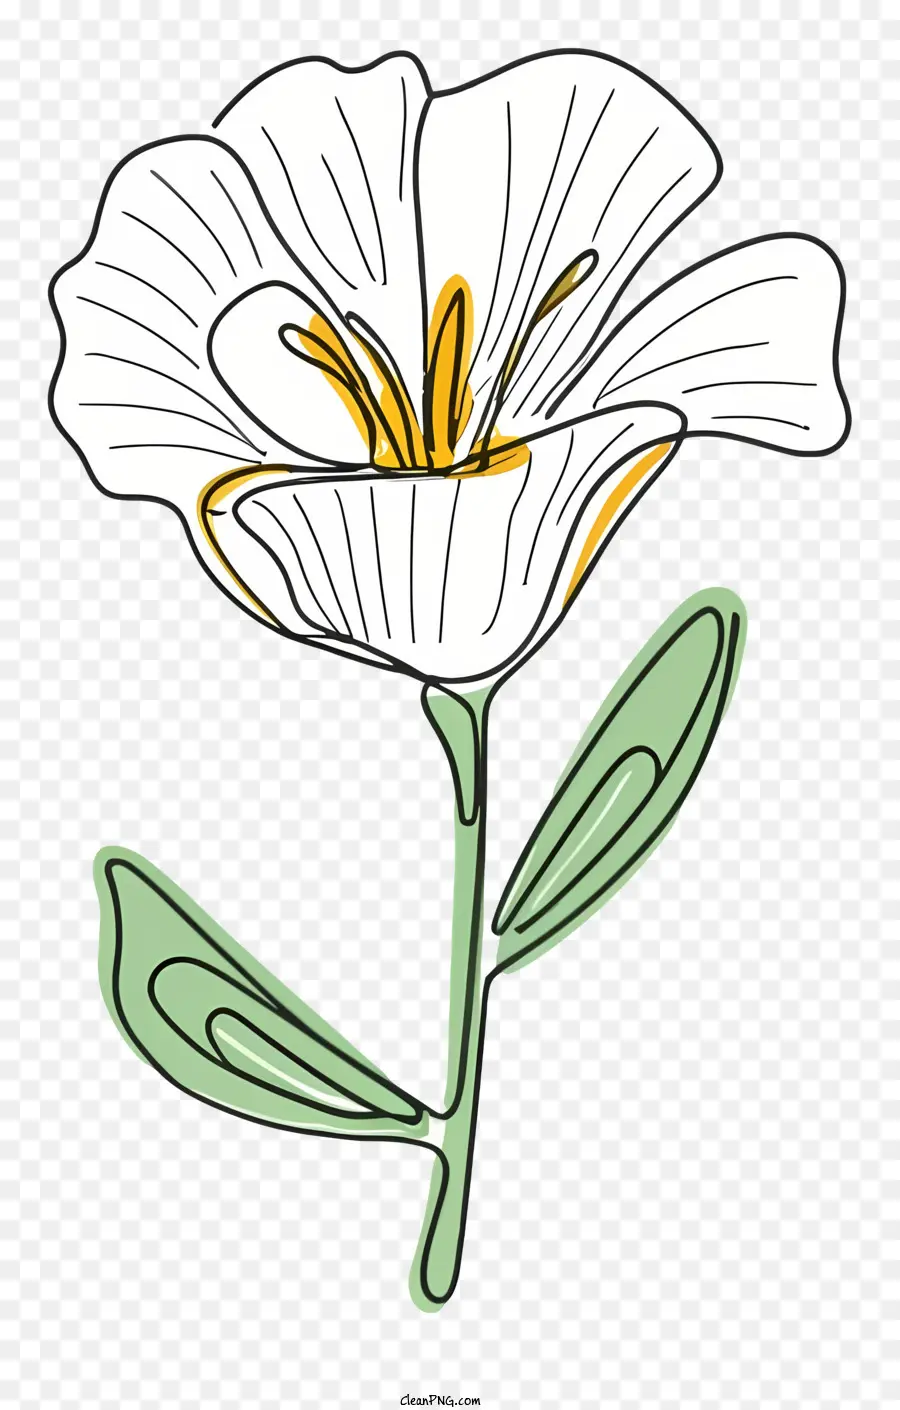 weiße Blume - Weiße Blume mit grünen Blättern auf schwarzem Hintergrund